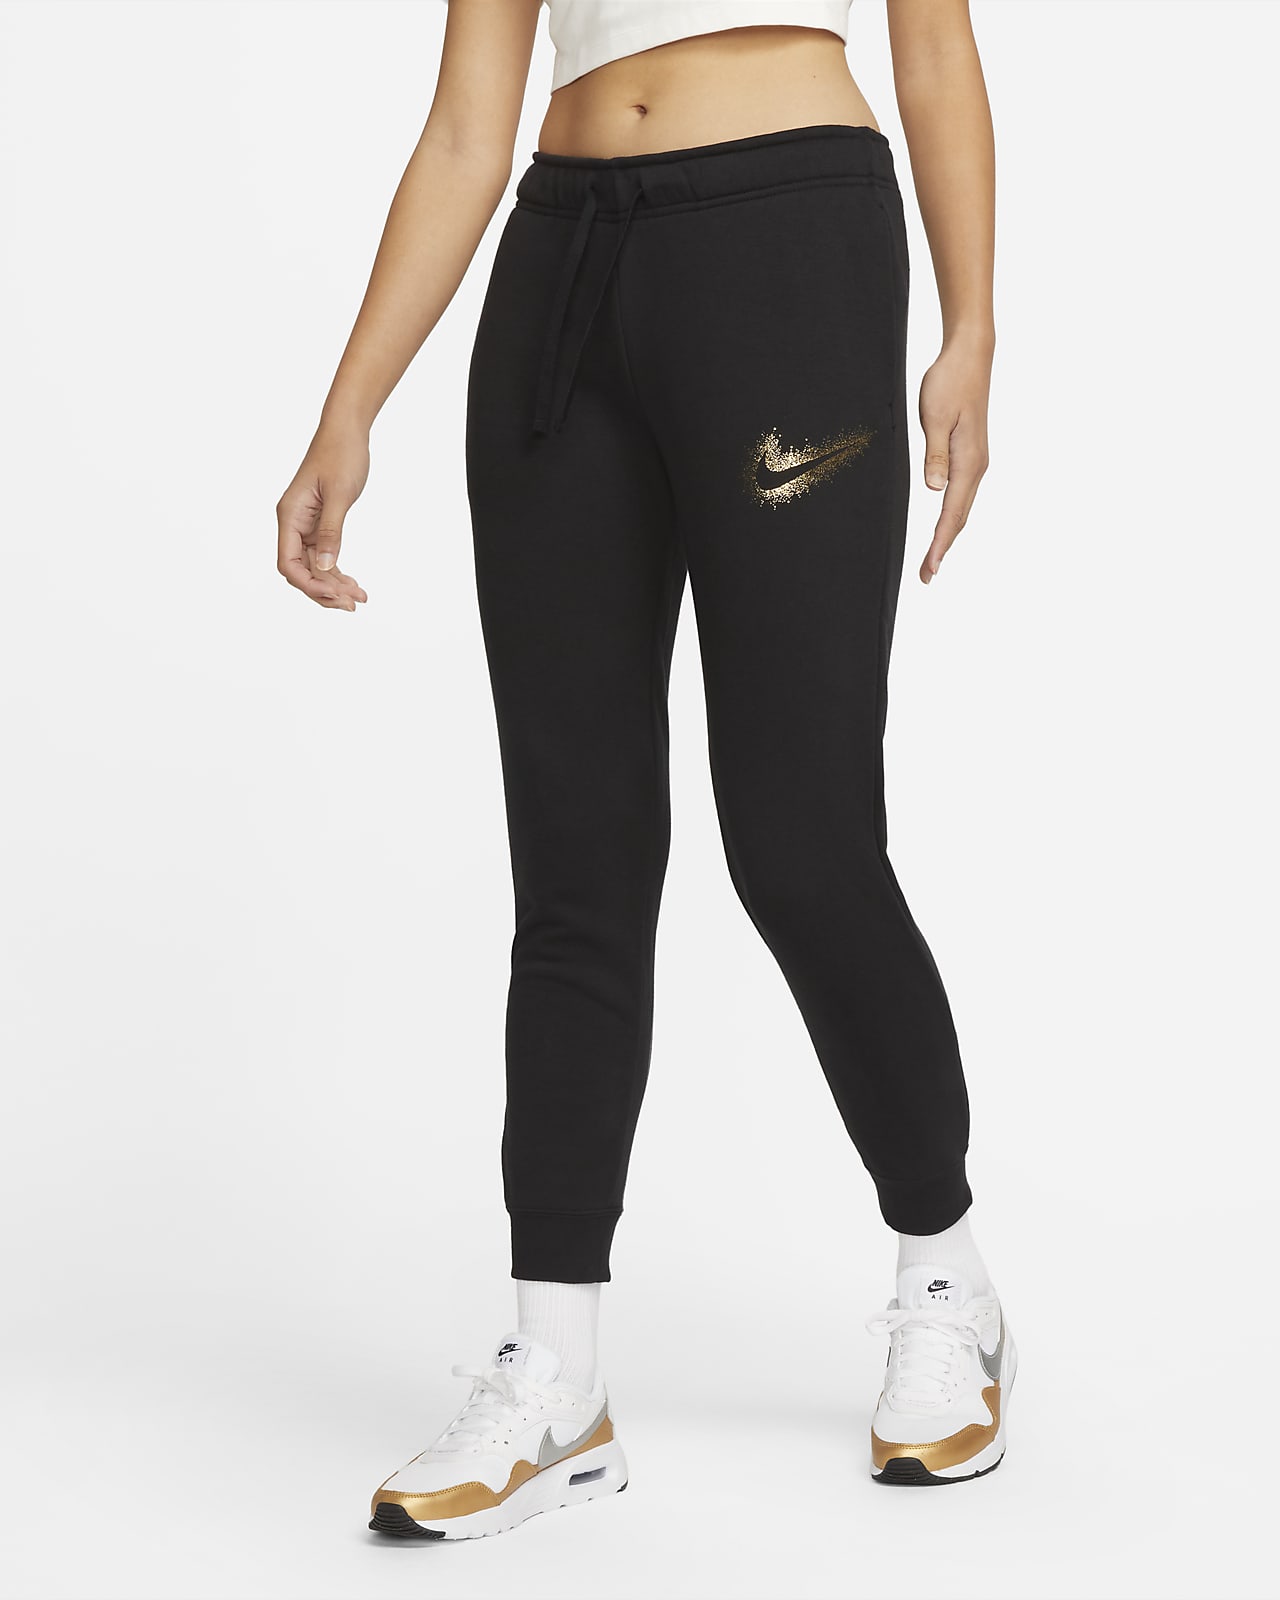 Women's Nike Sweatpants & Leggings